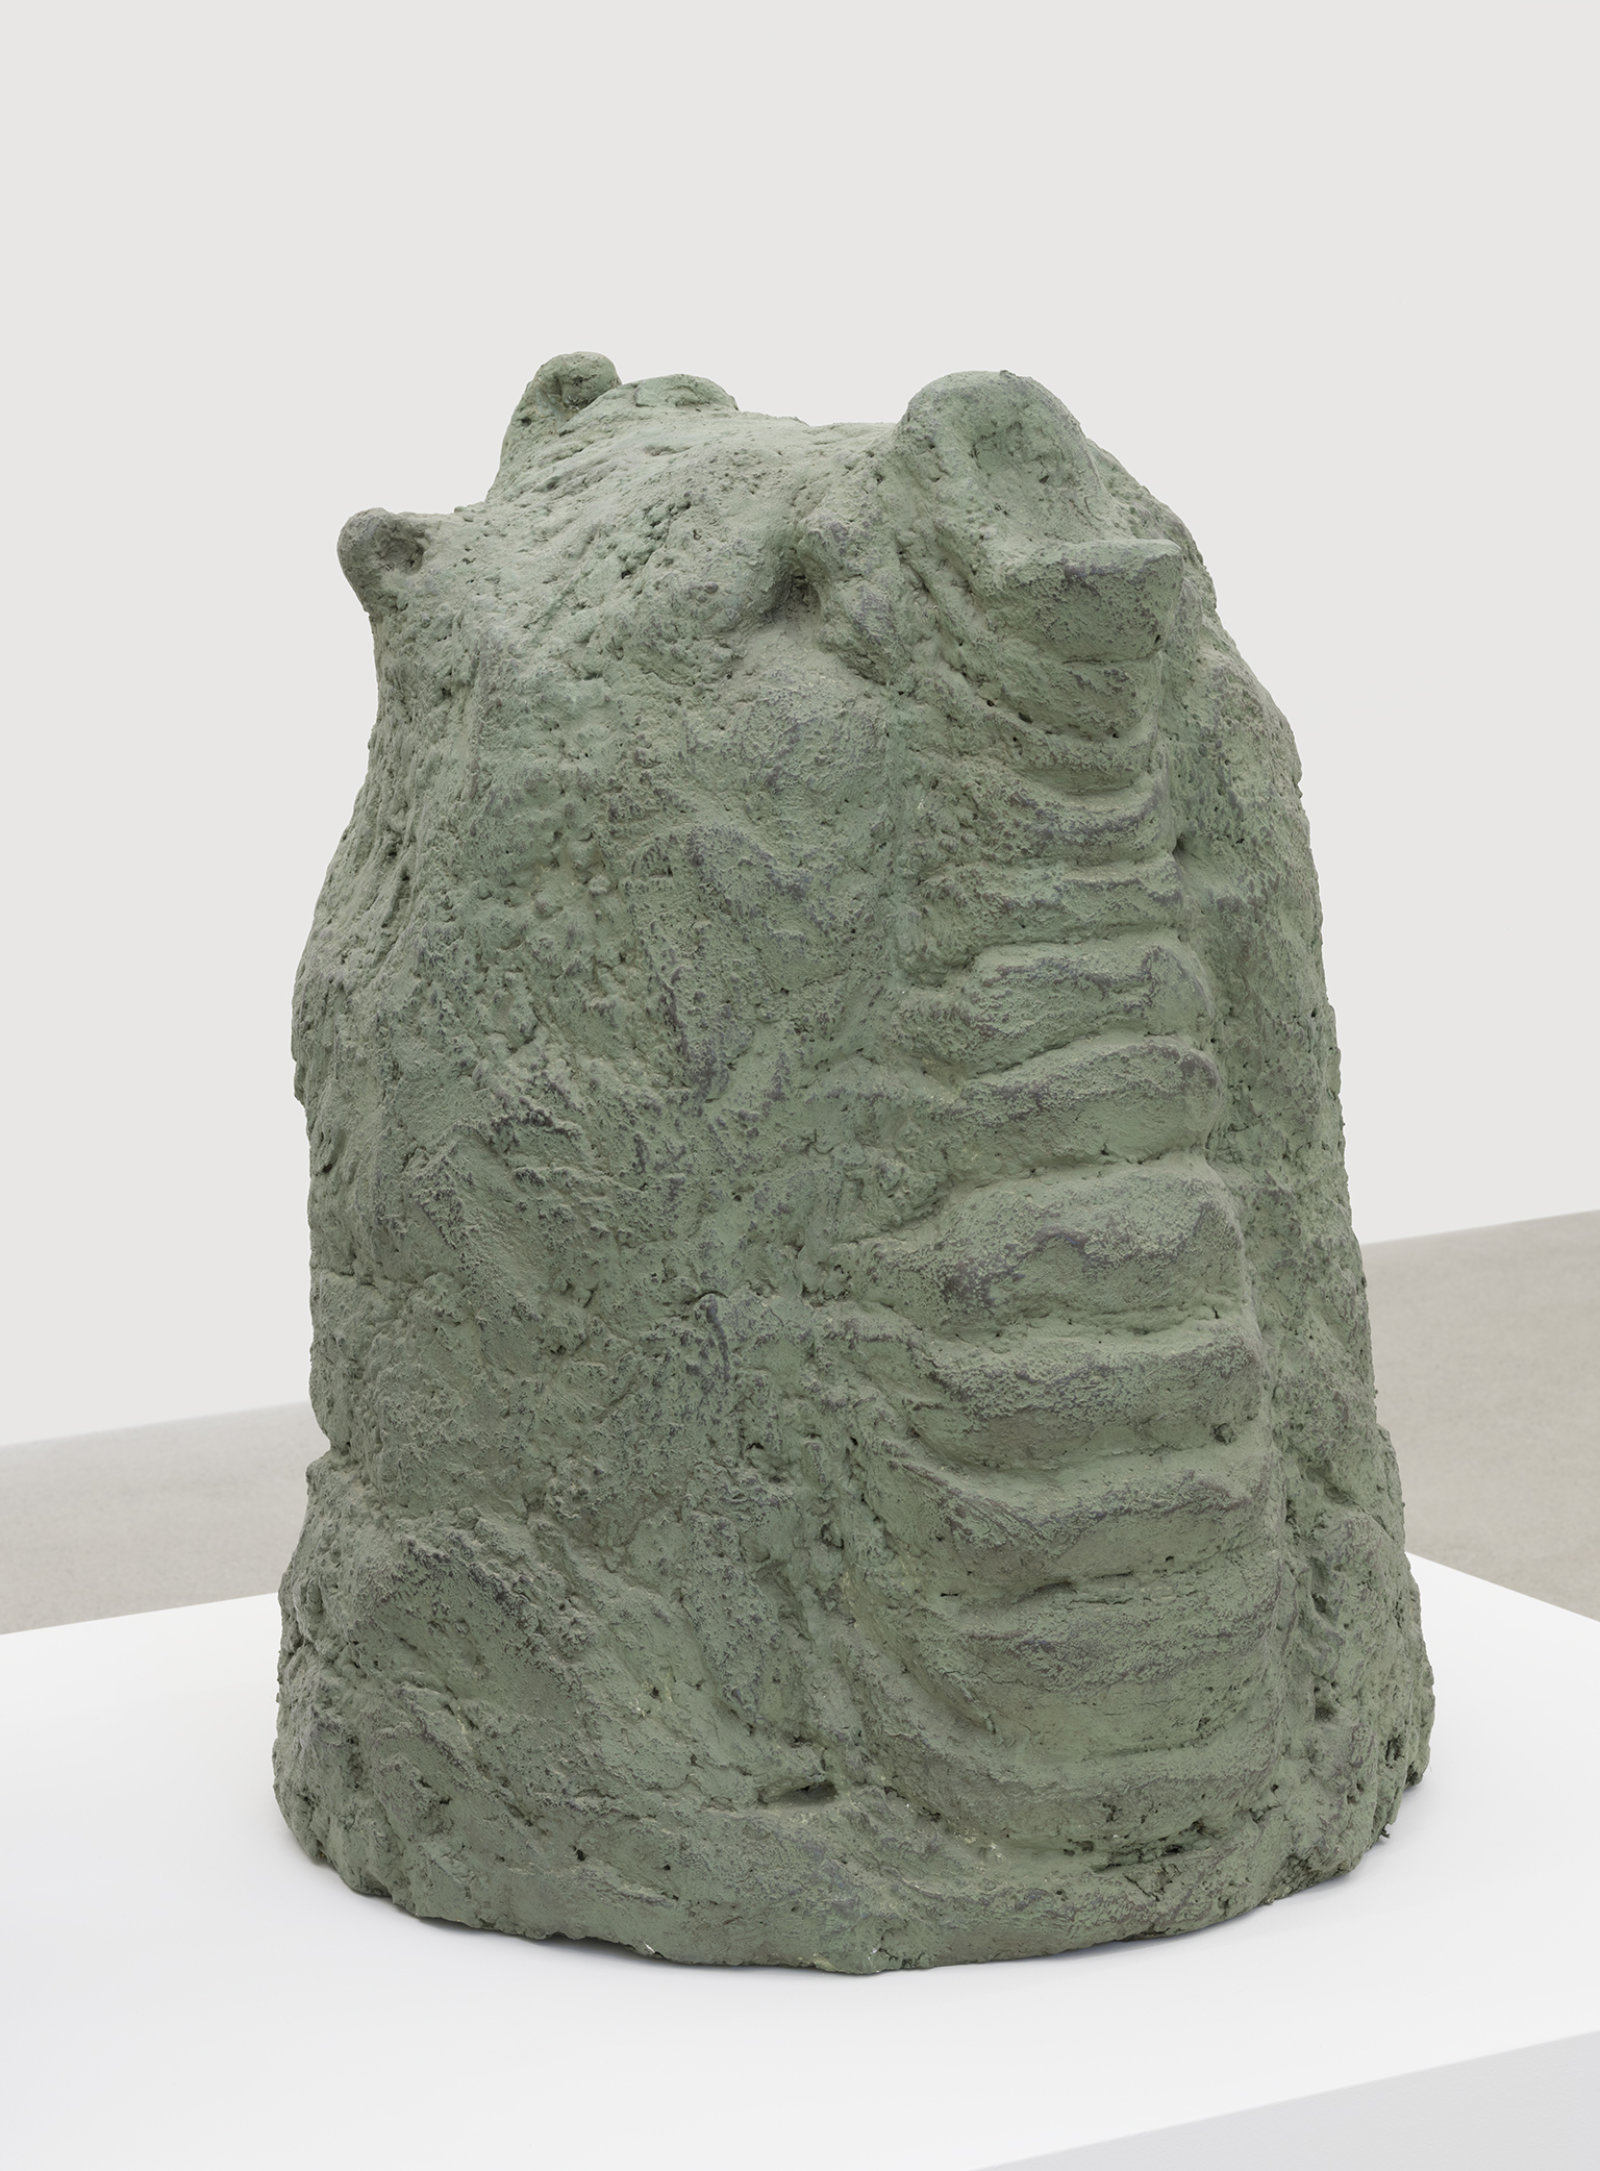 Valérie Blass, Éléphant en vert et noir (detail), 2005, cement, plaster, leather, 46 x 71 x 41 in. (117 x 180 x 104 cm)